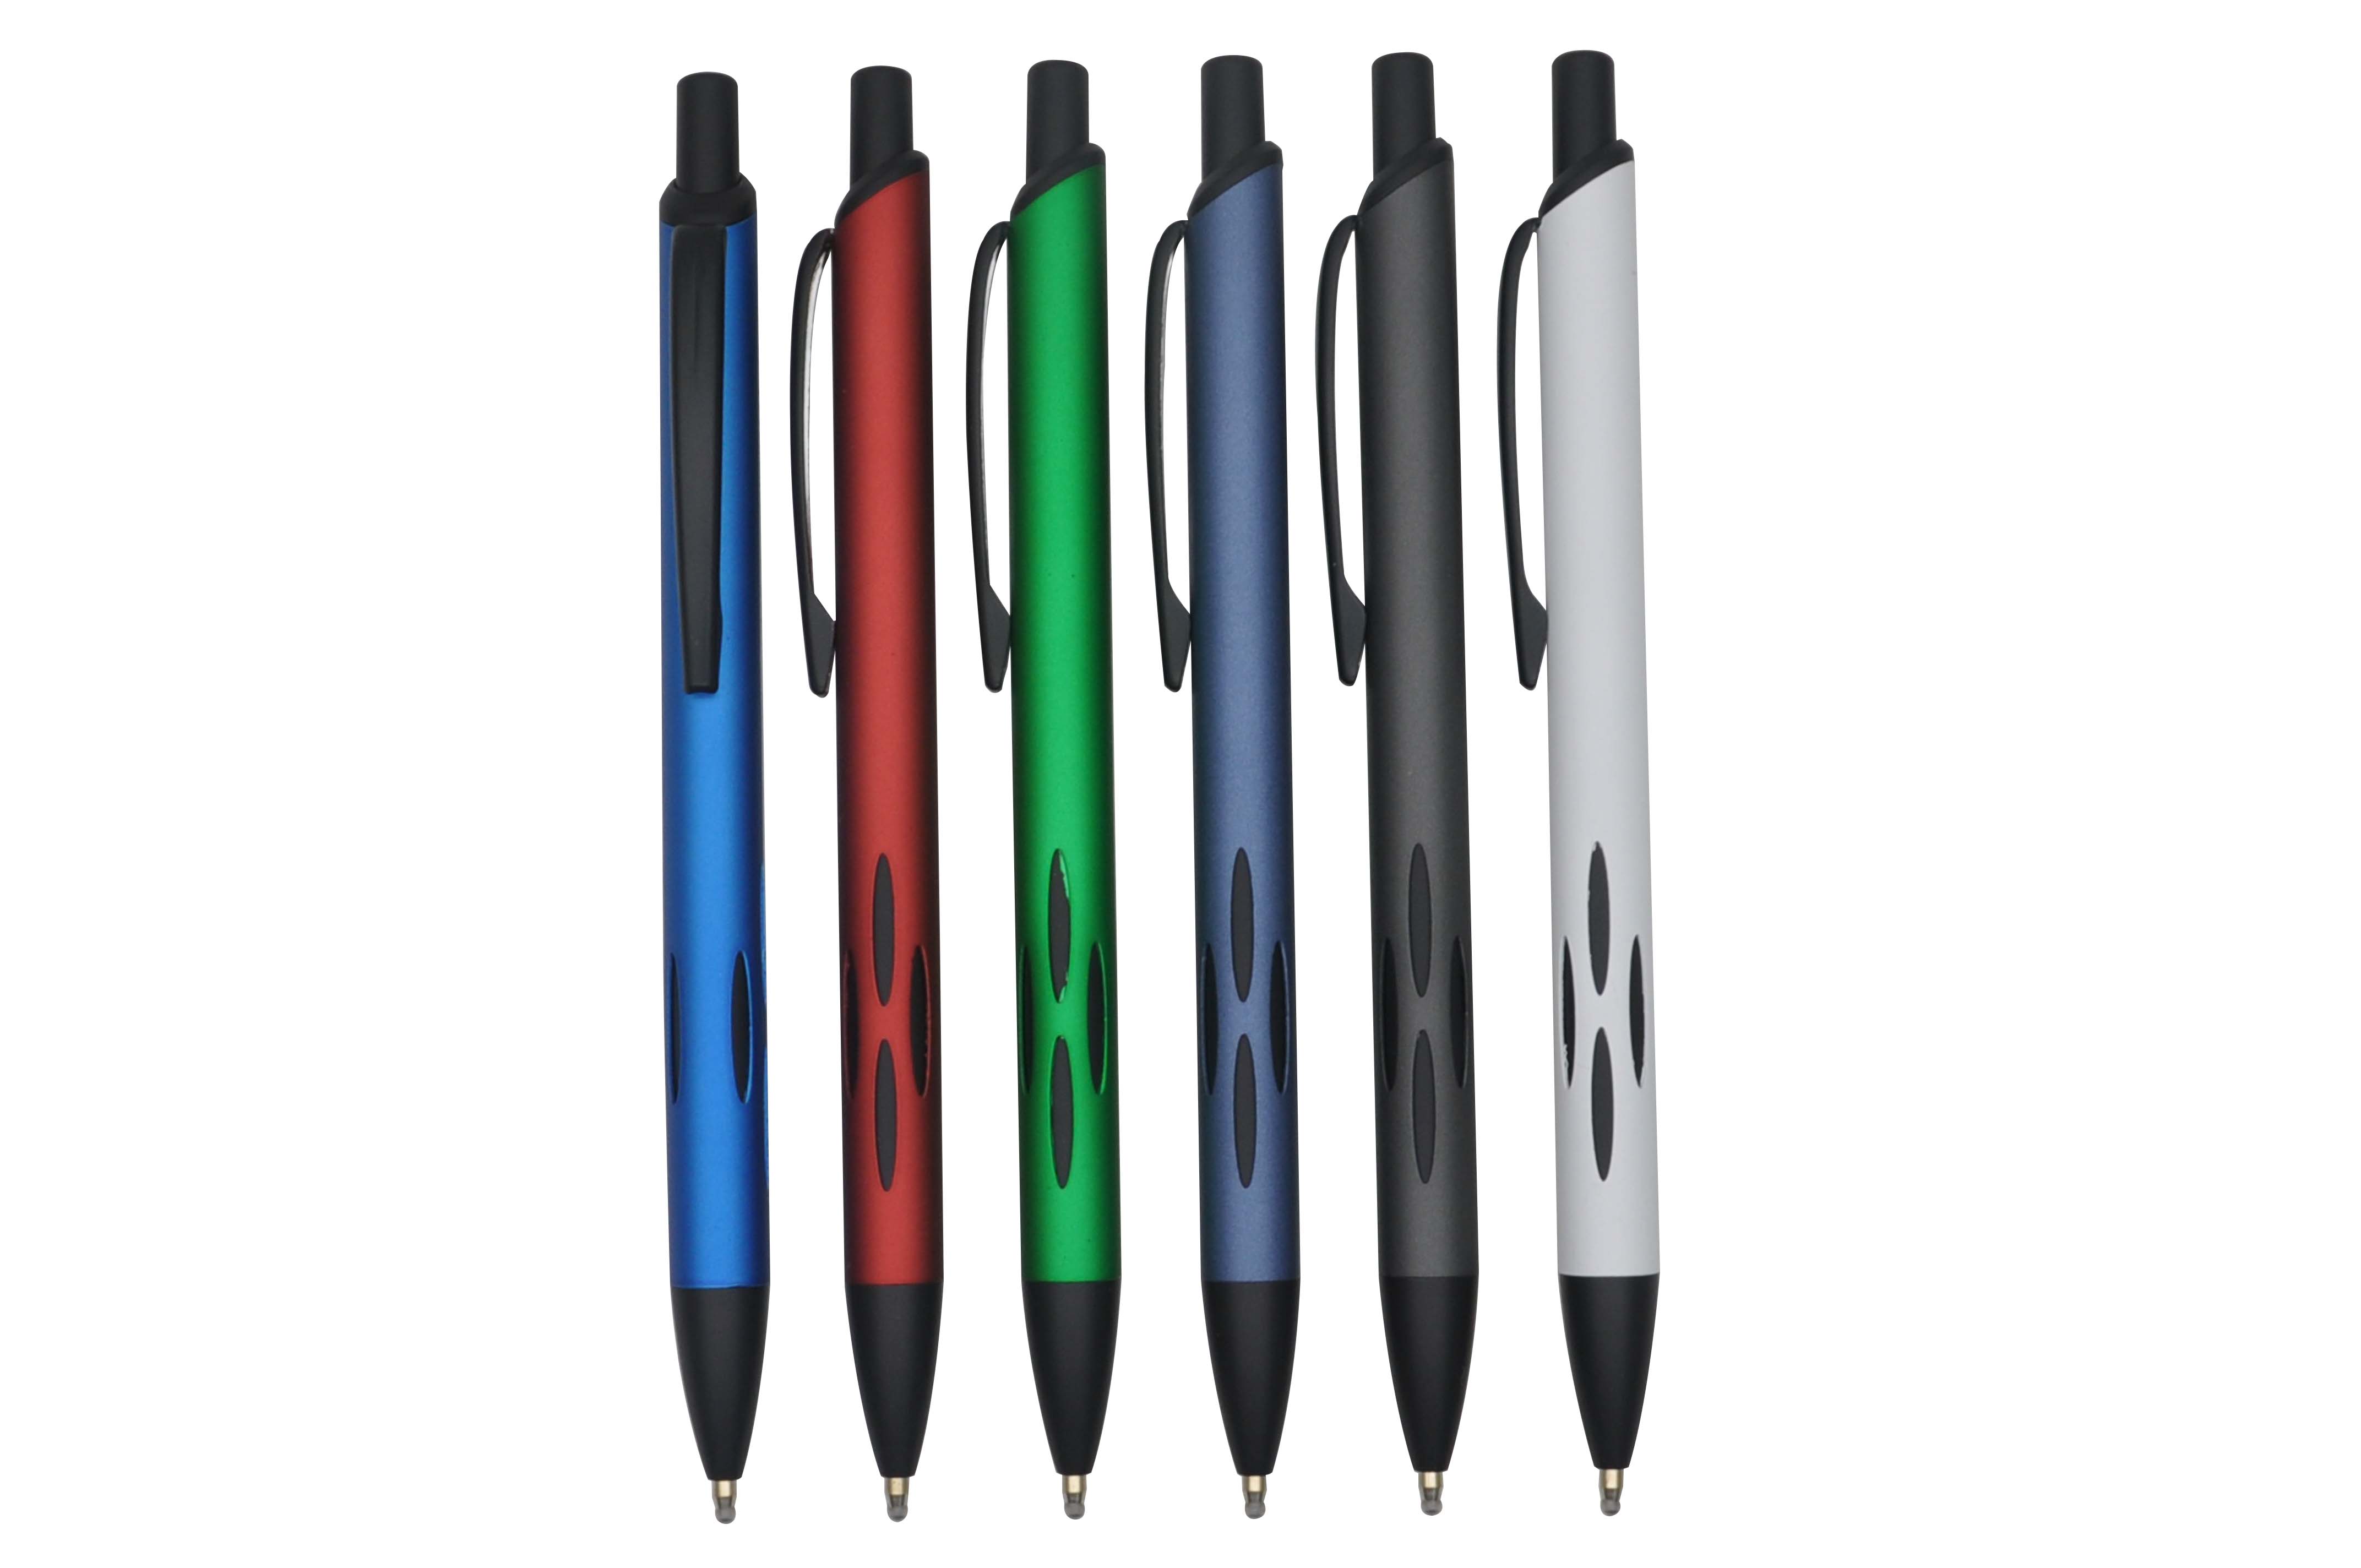 MP1433B metal aluminium ballpoint pen